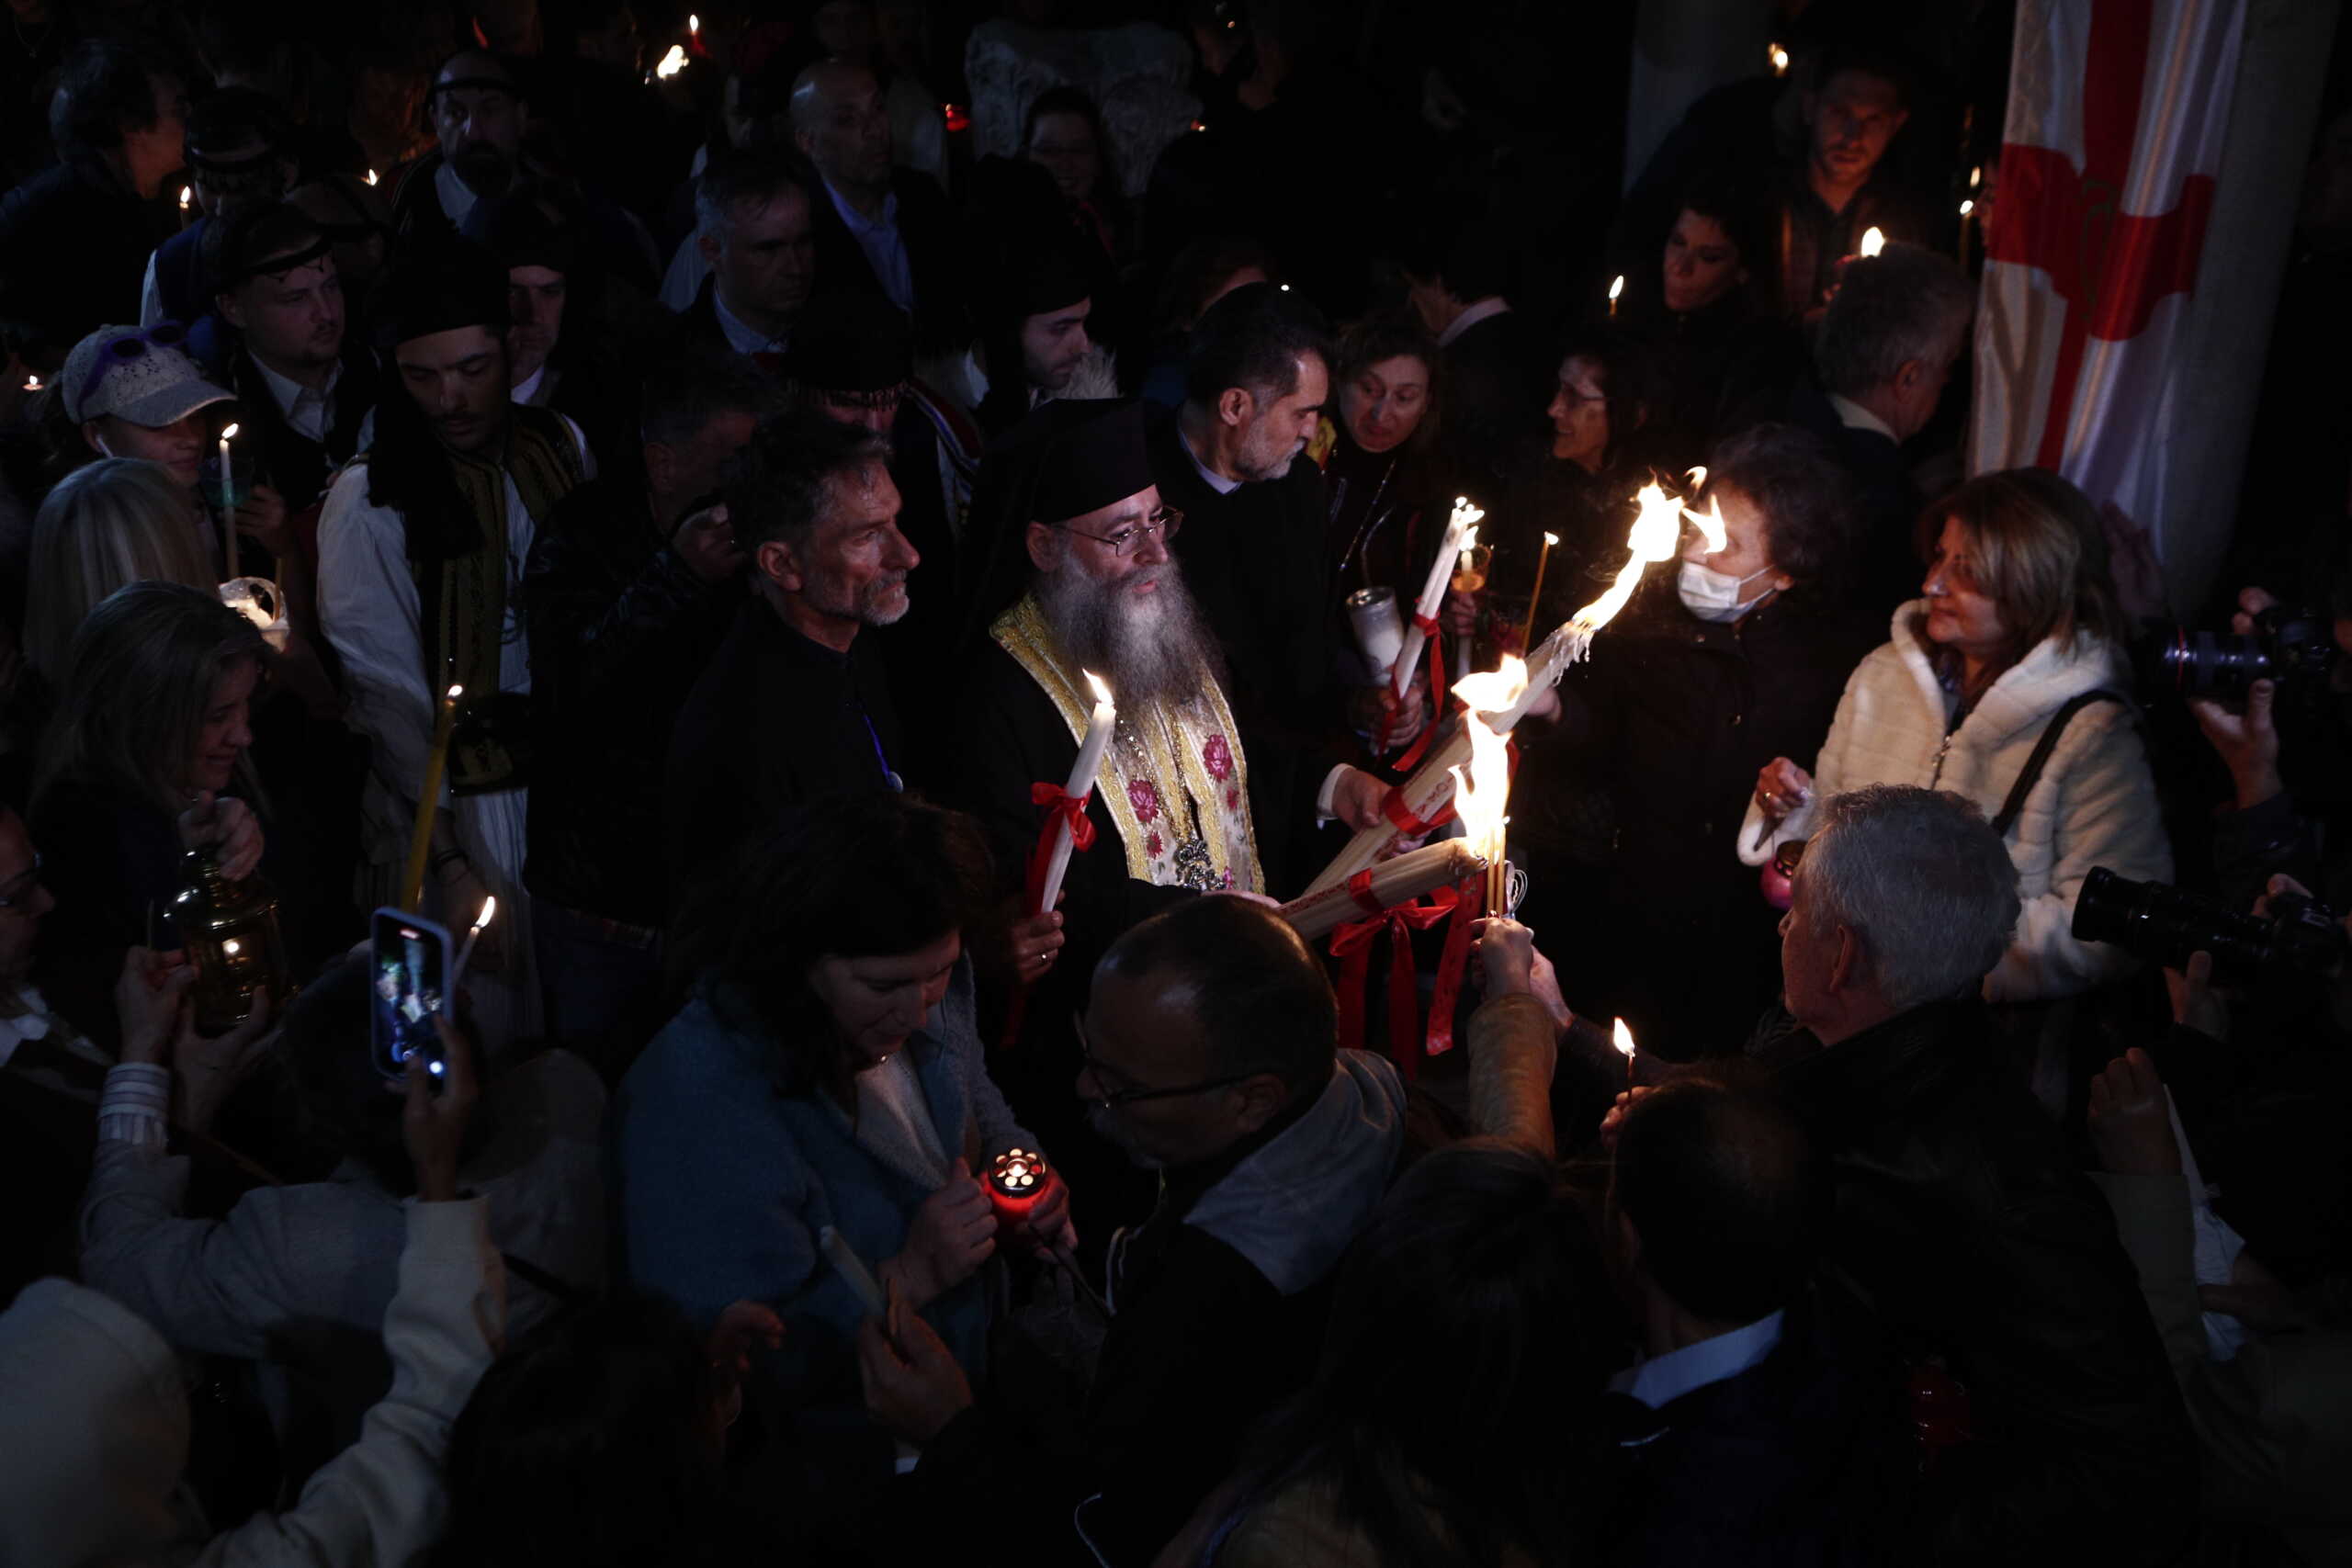 Το Άγιο Φως έφτασε στην Ελλάδα – Μεταφέρθηκε στο Μετόχι του Παναγίου Τάφου στην Πλάκα και σε όλη την Ελλάδα με ειδικές πτήσεις